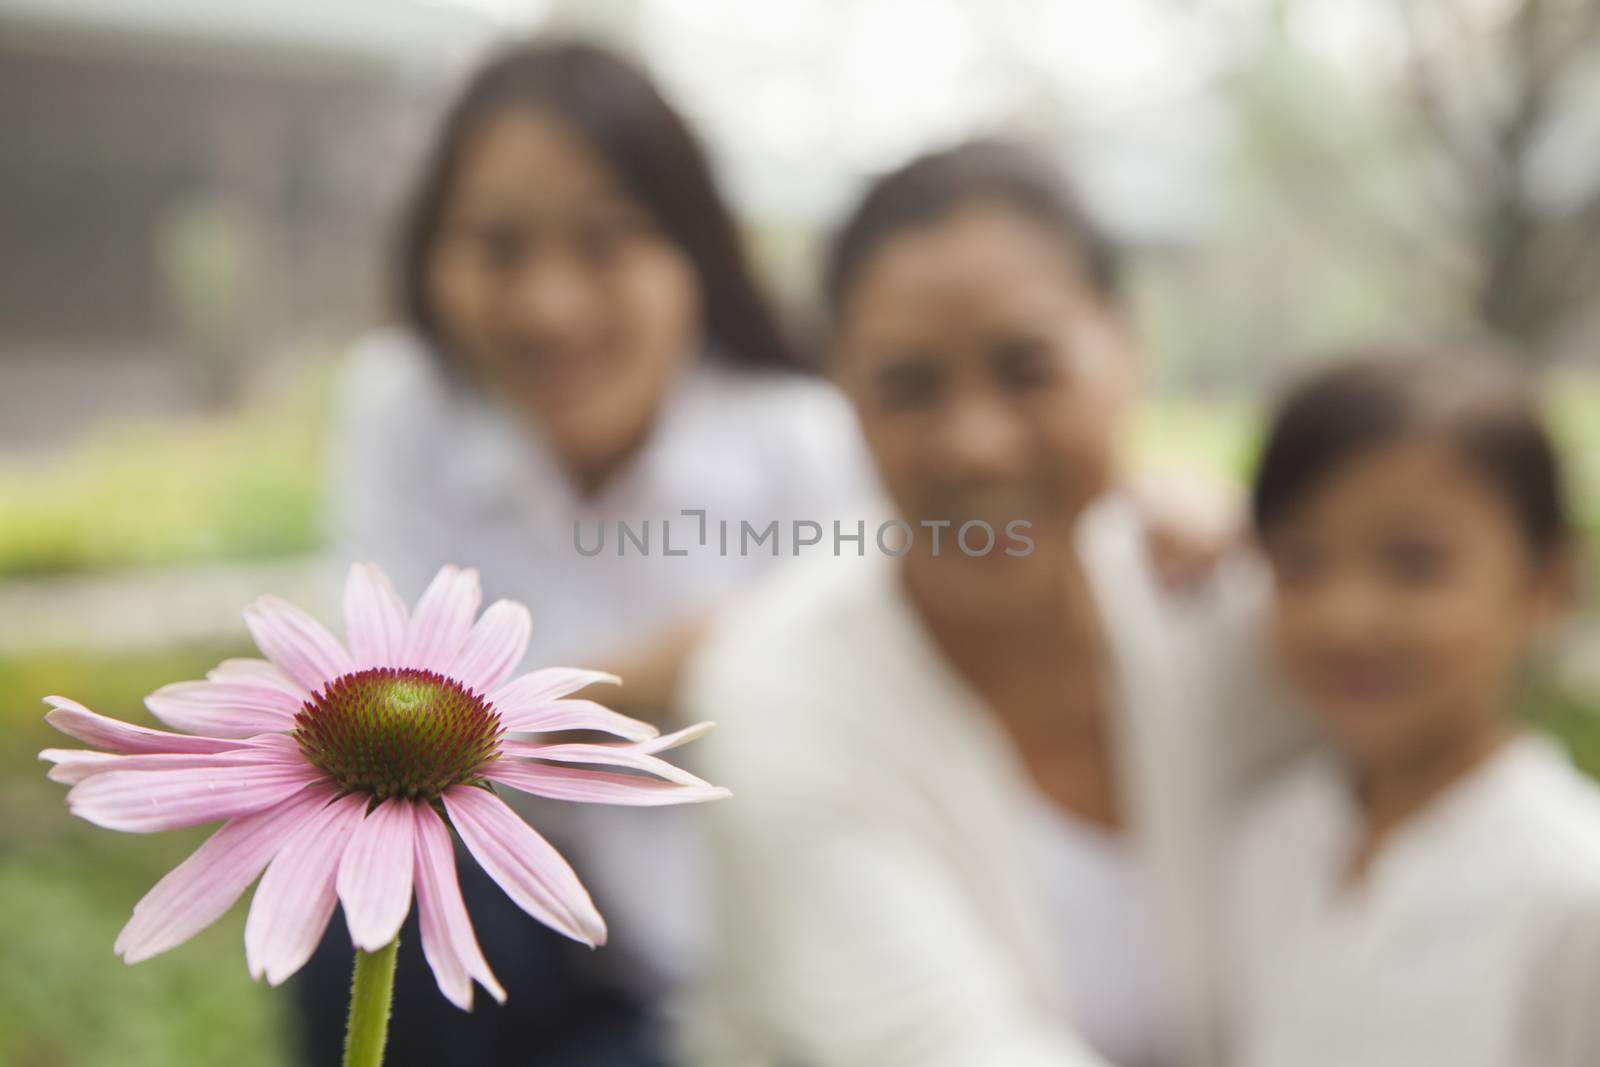 Three generation looking at flower in garden